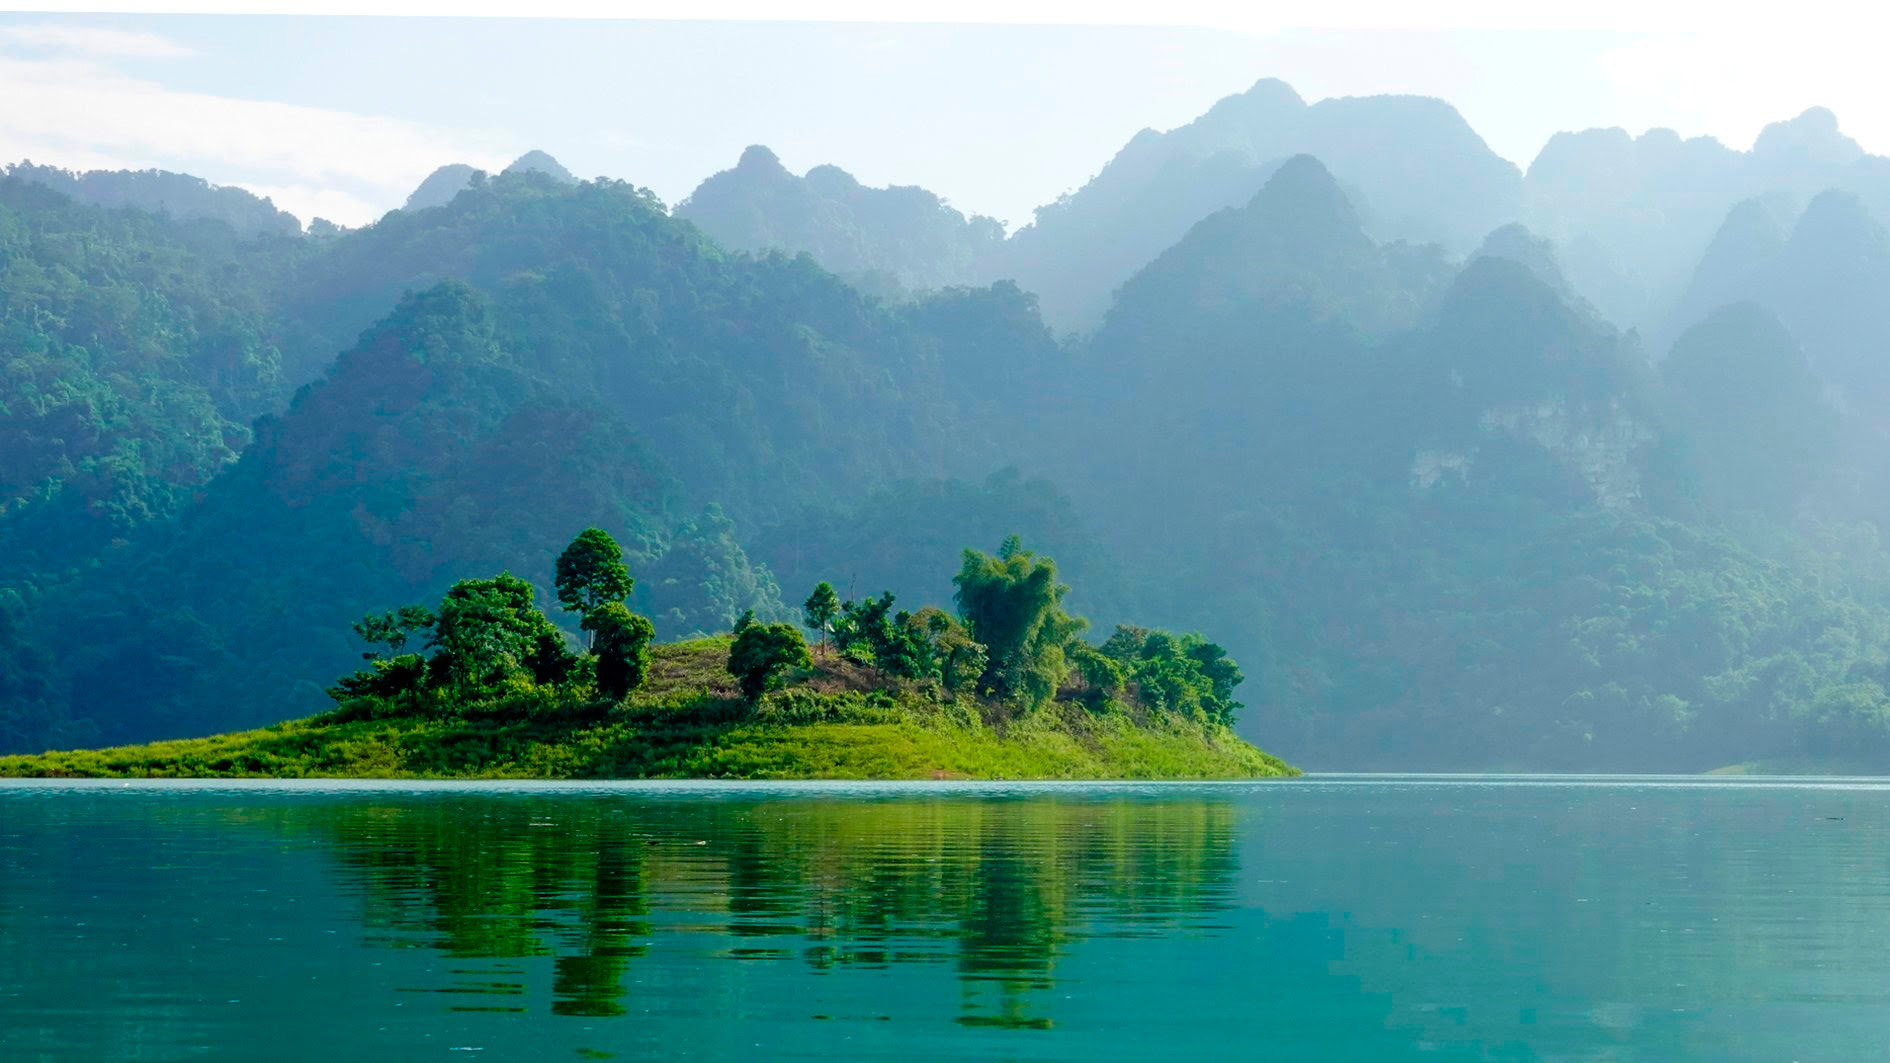 Hồ nước ngọt nhân tạo lớn nhất Tuyên Quang hiện ra đẹp như phim, có ngọn thác đổ, rừng nguyên sinh - Ảnh 2.